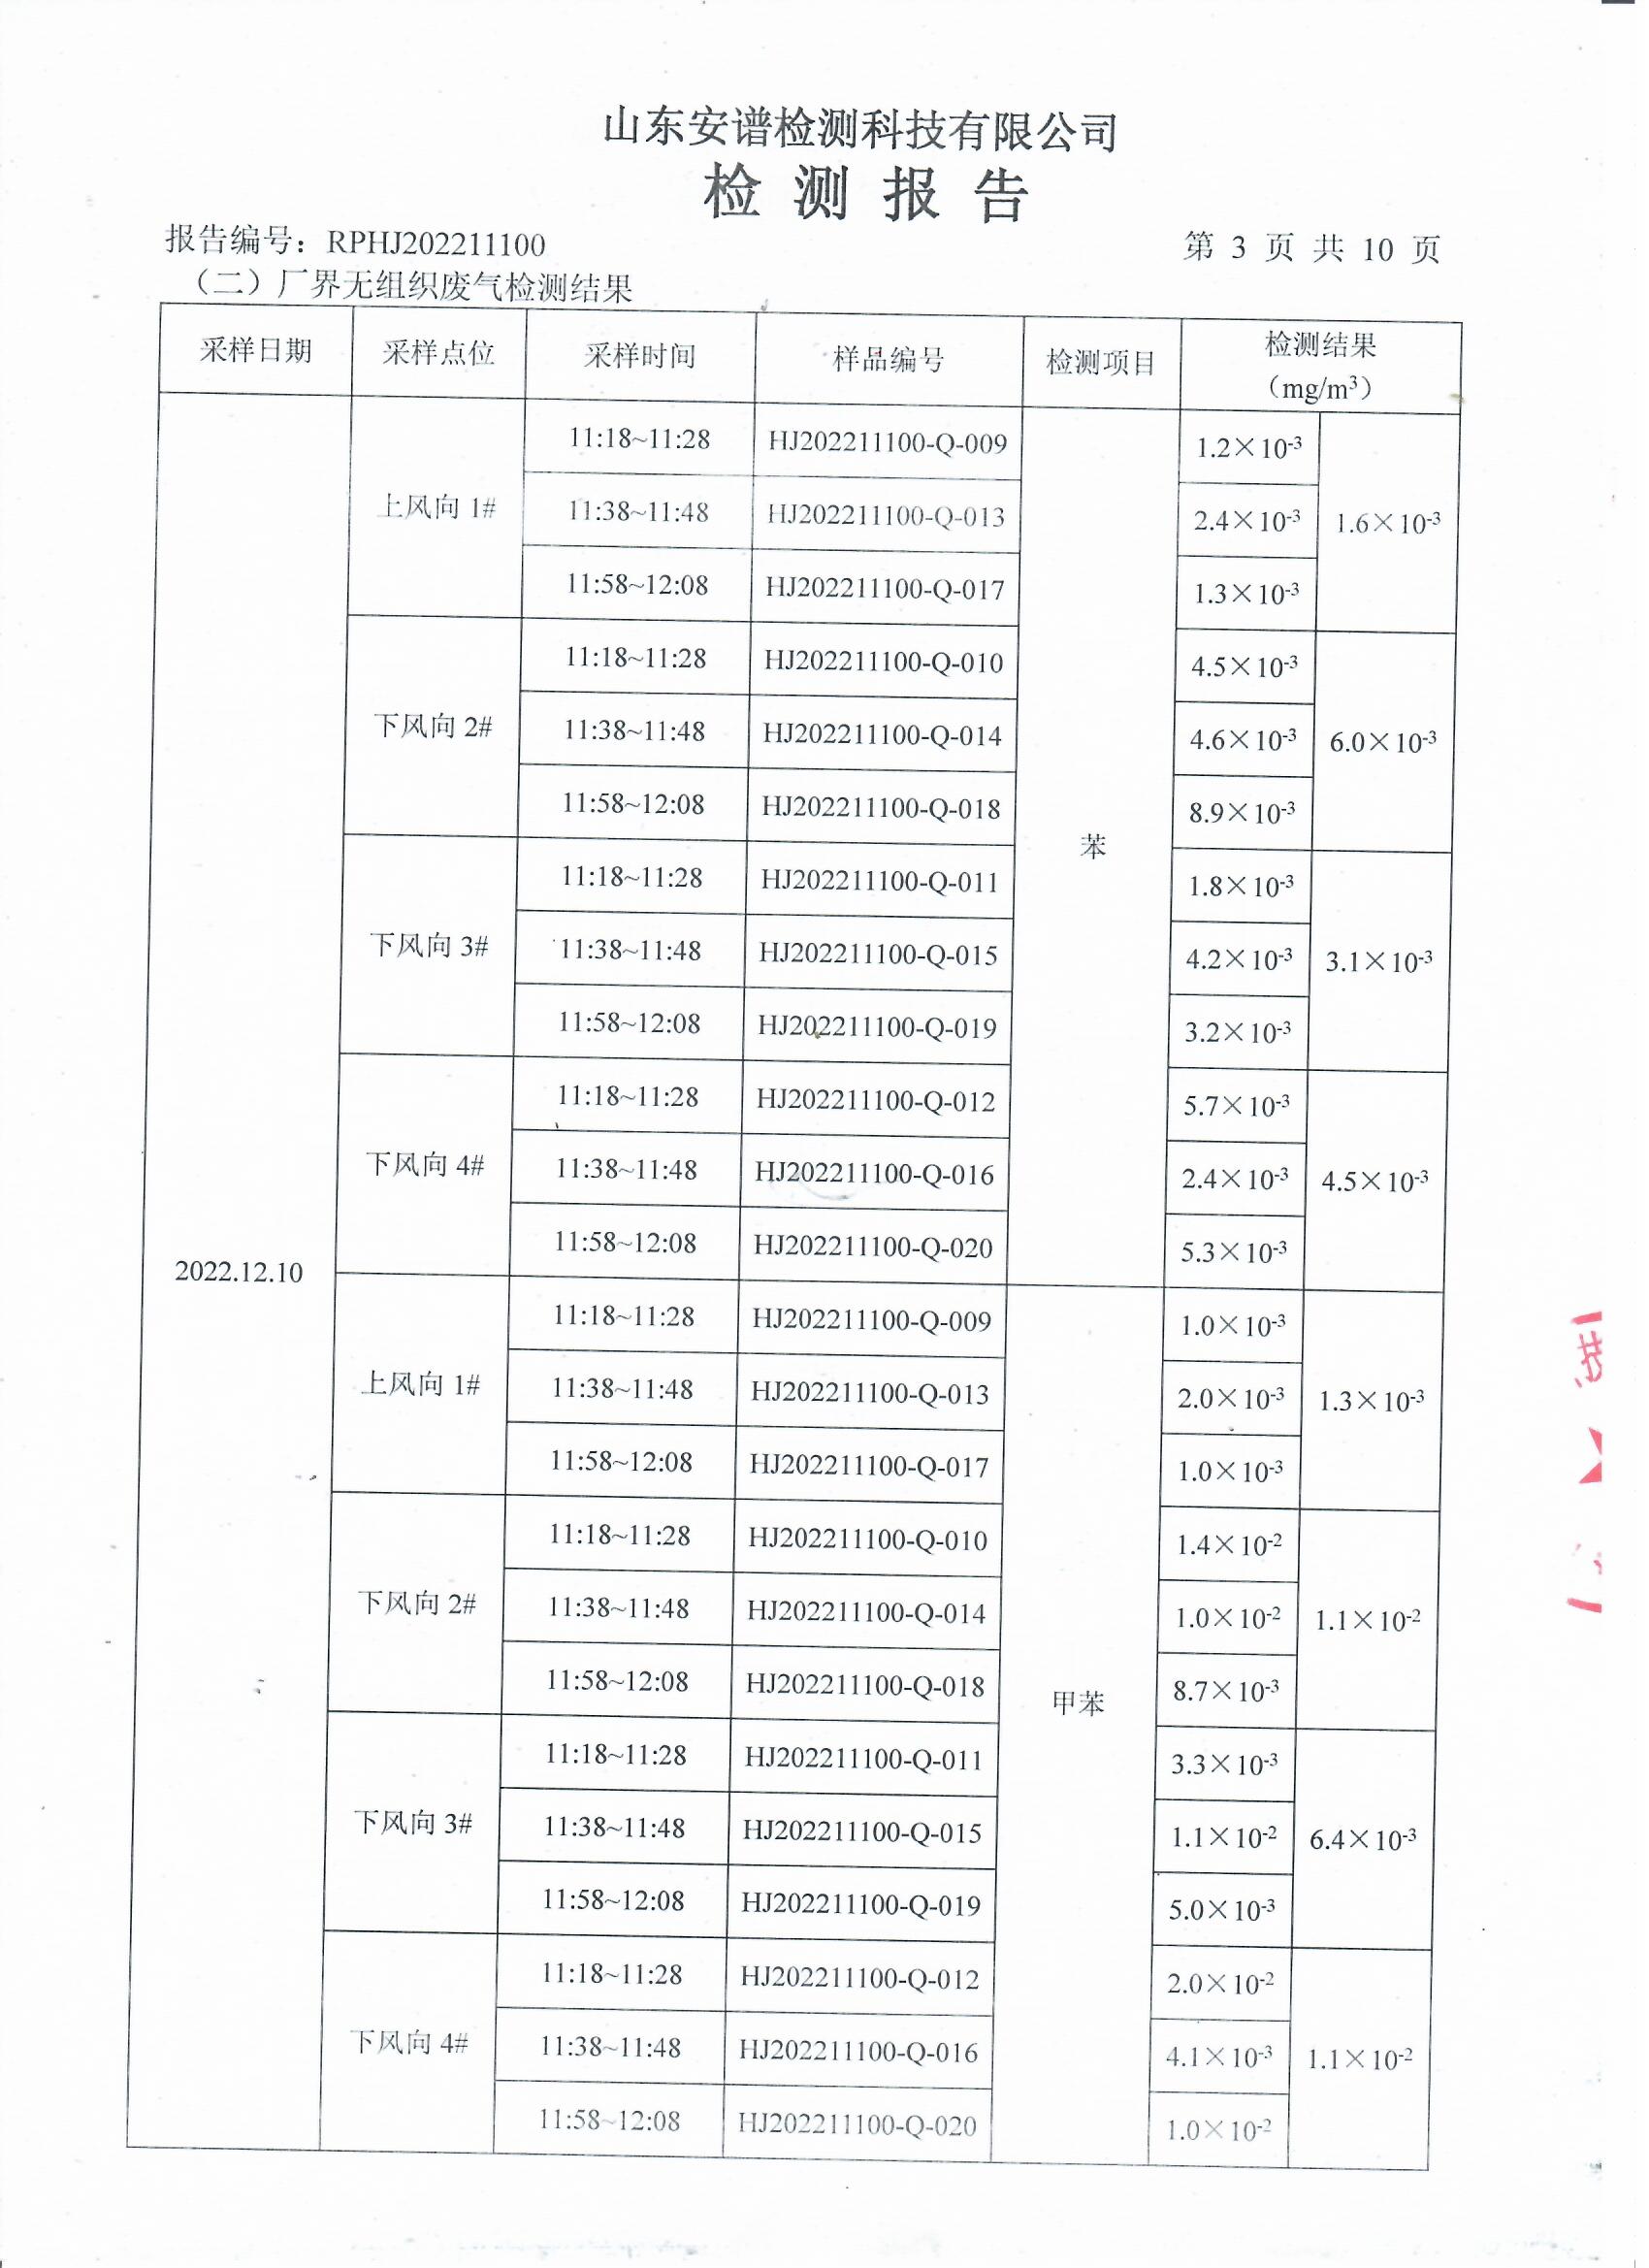 2022年第四季度检测报告公示 泰安杰盛(图5)